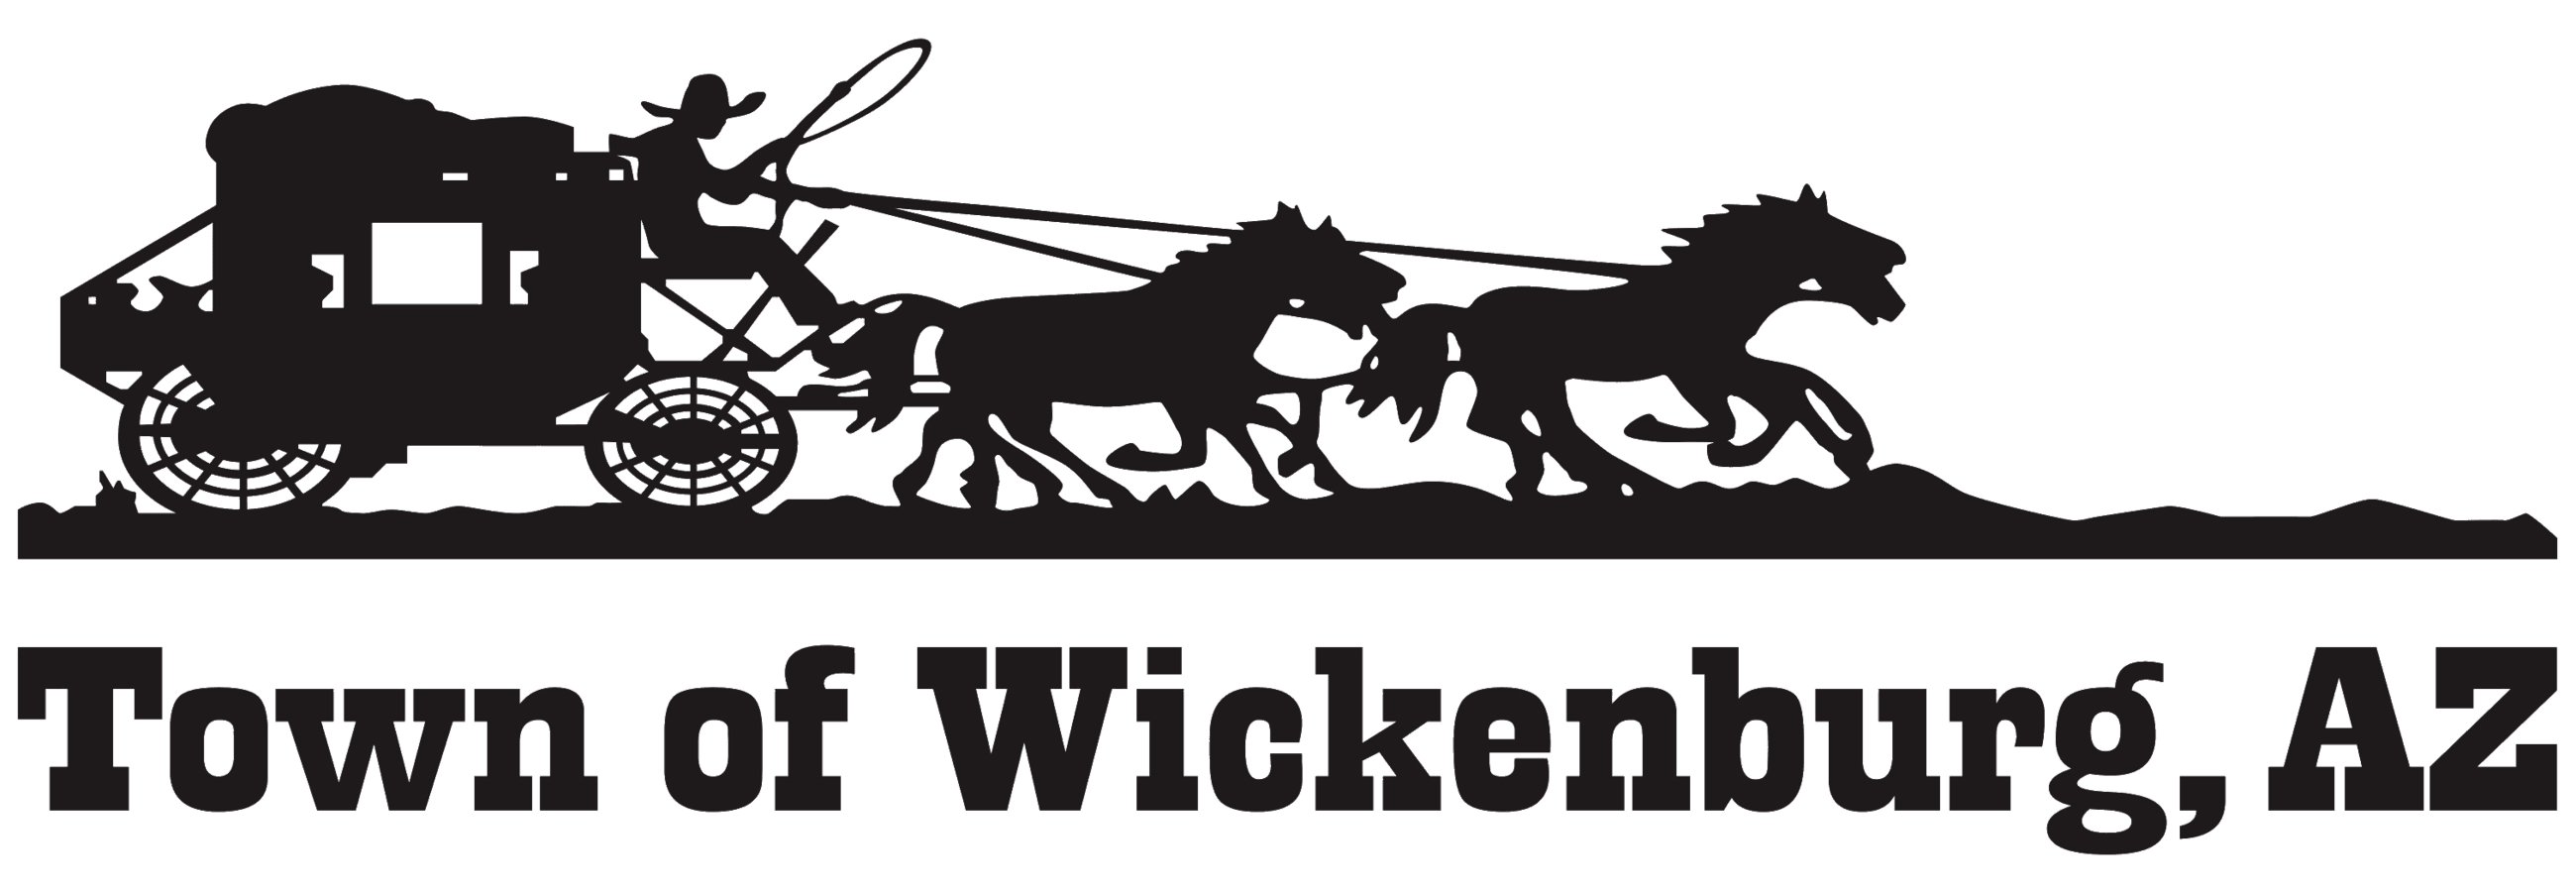 Wickenburg